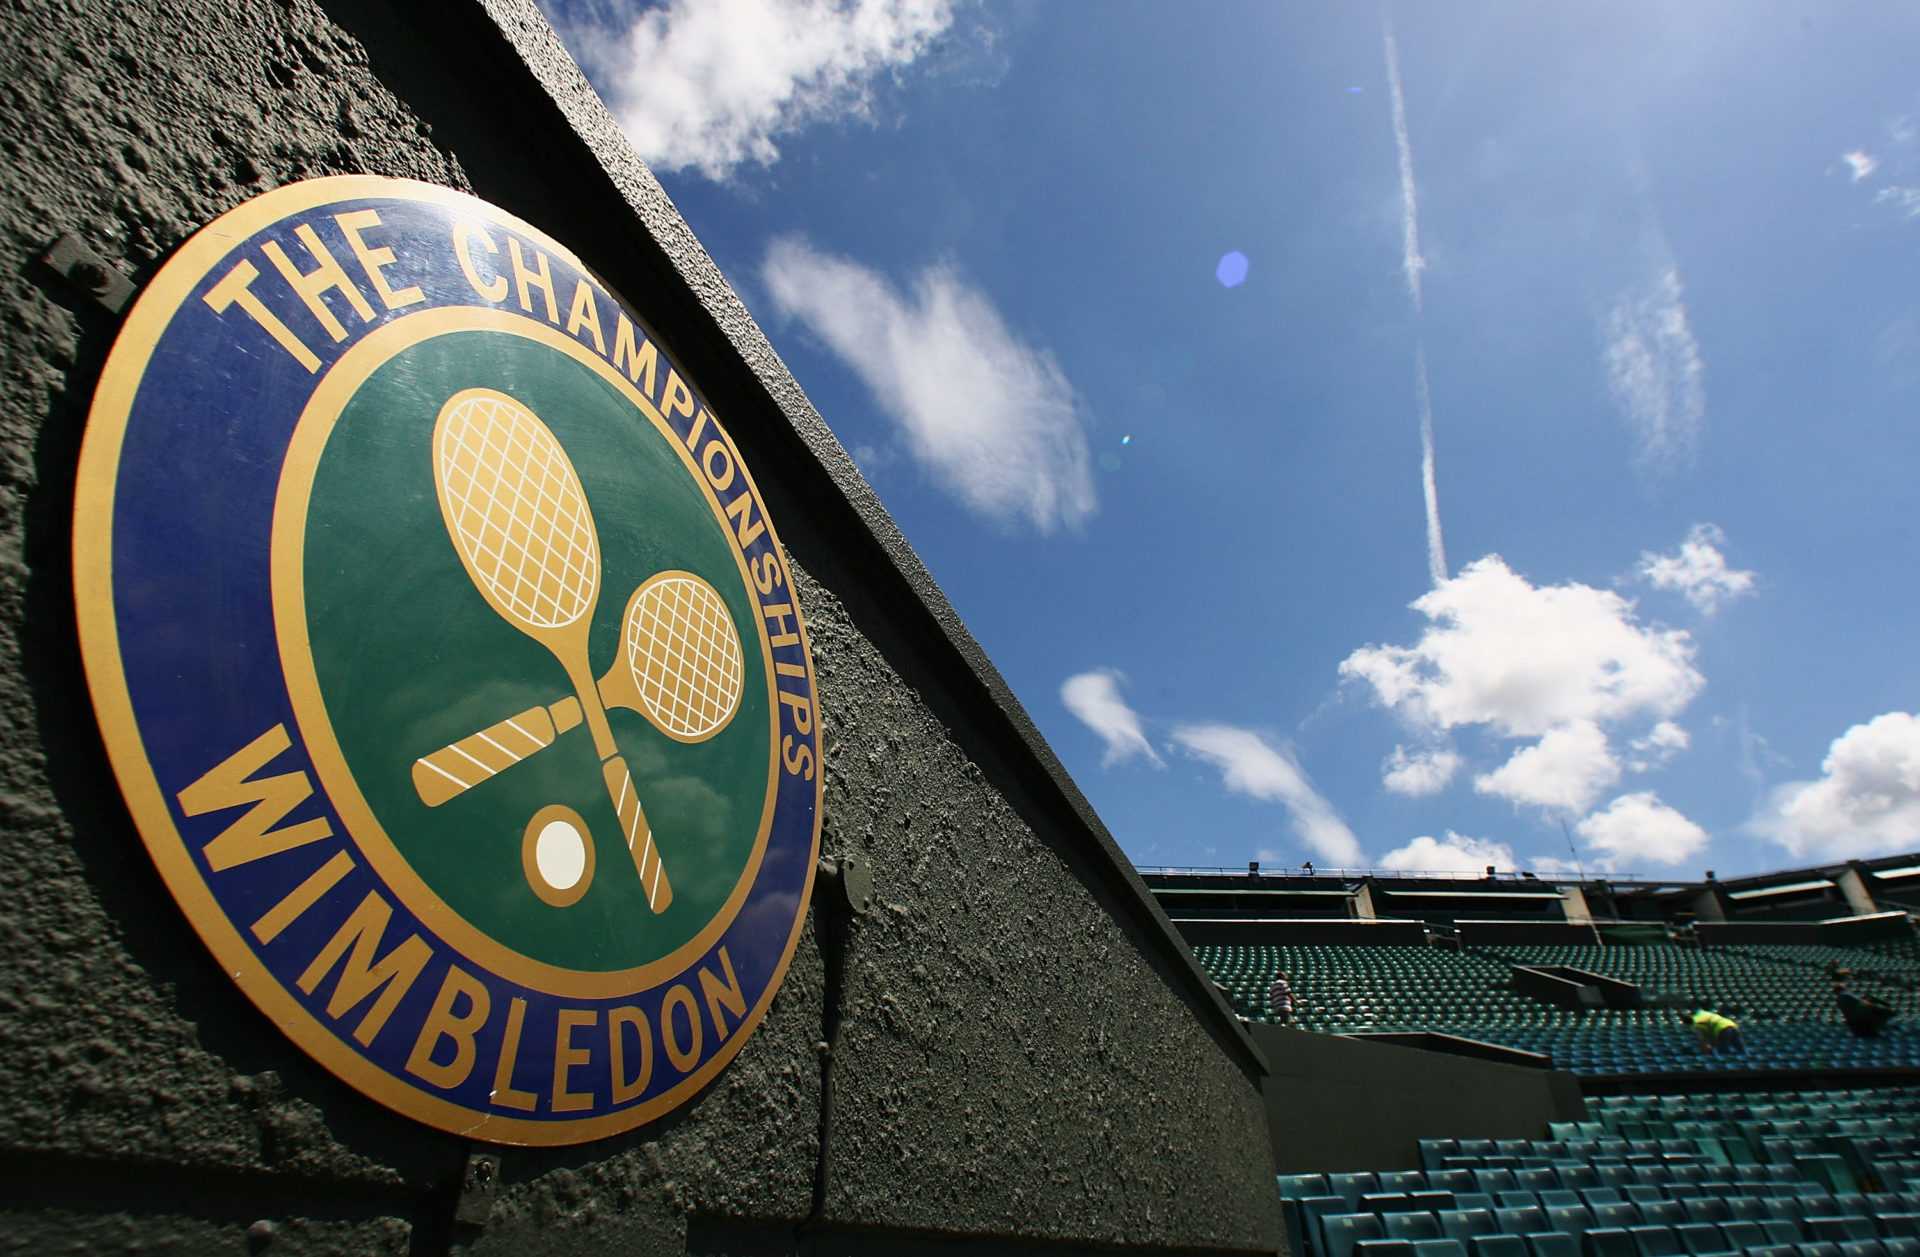 L'ancien finaliste du Grand Chelem est optimiste quant au championnat de Wimbledon 2021 tenu avec des fans